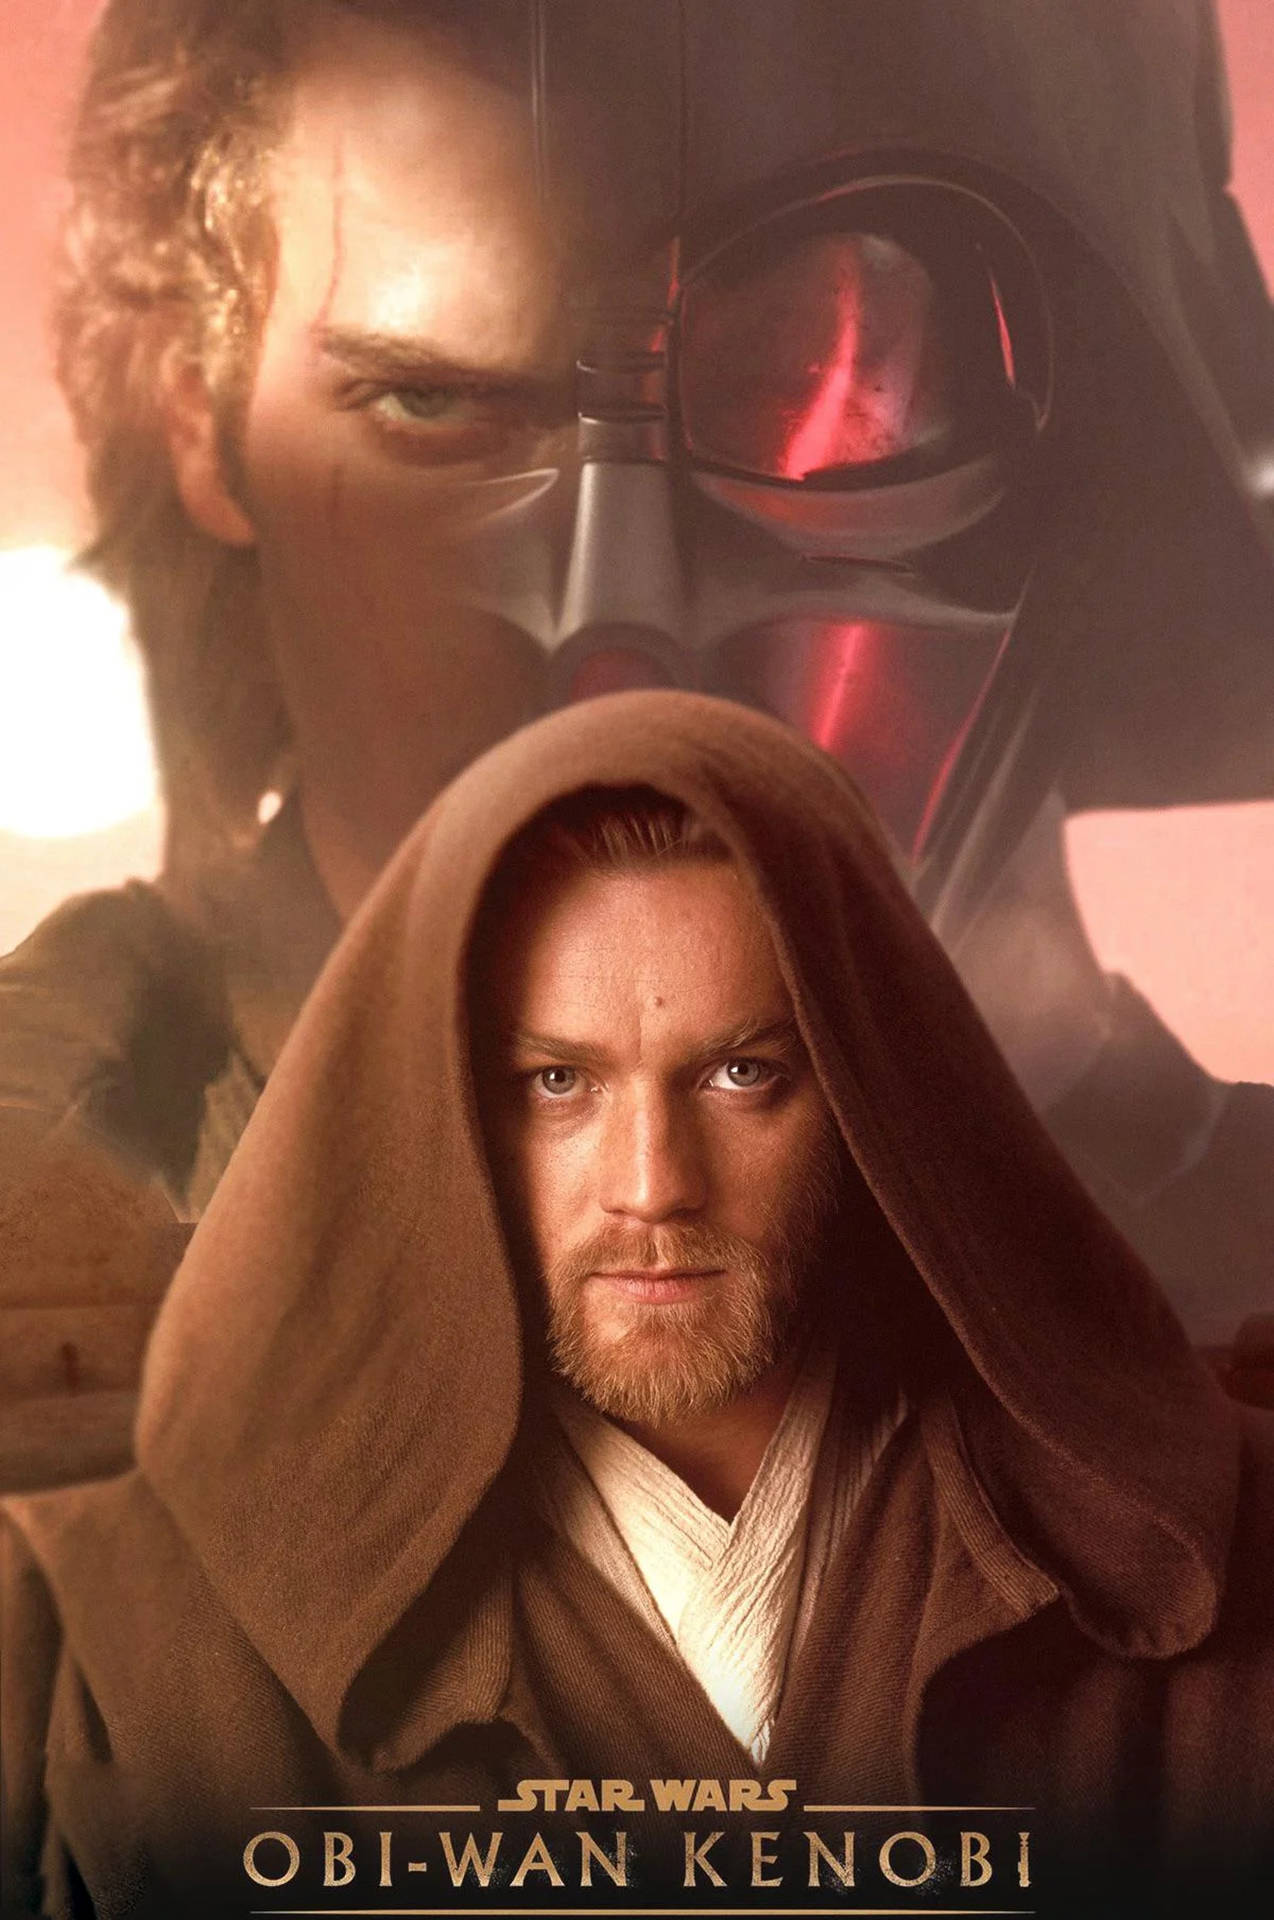 Obi Wan Kenobi And Anakin Sywalker Wallpaper